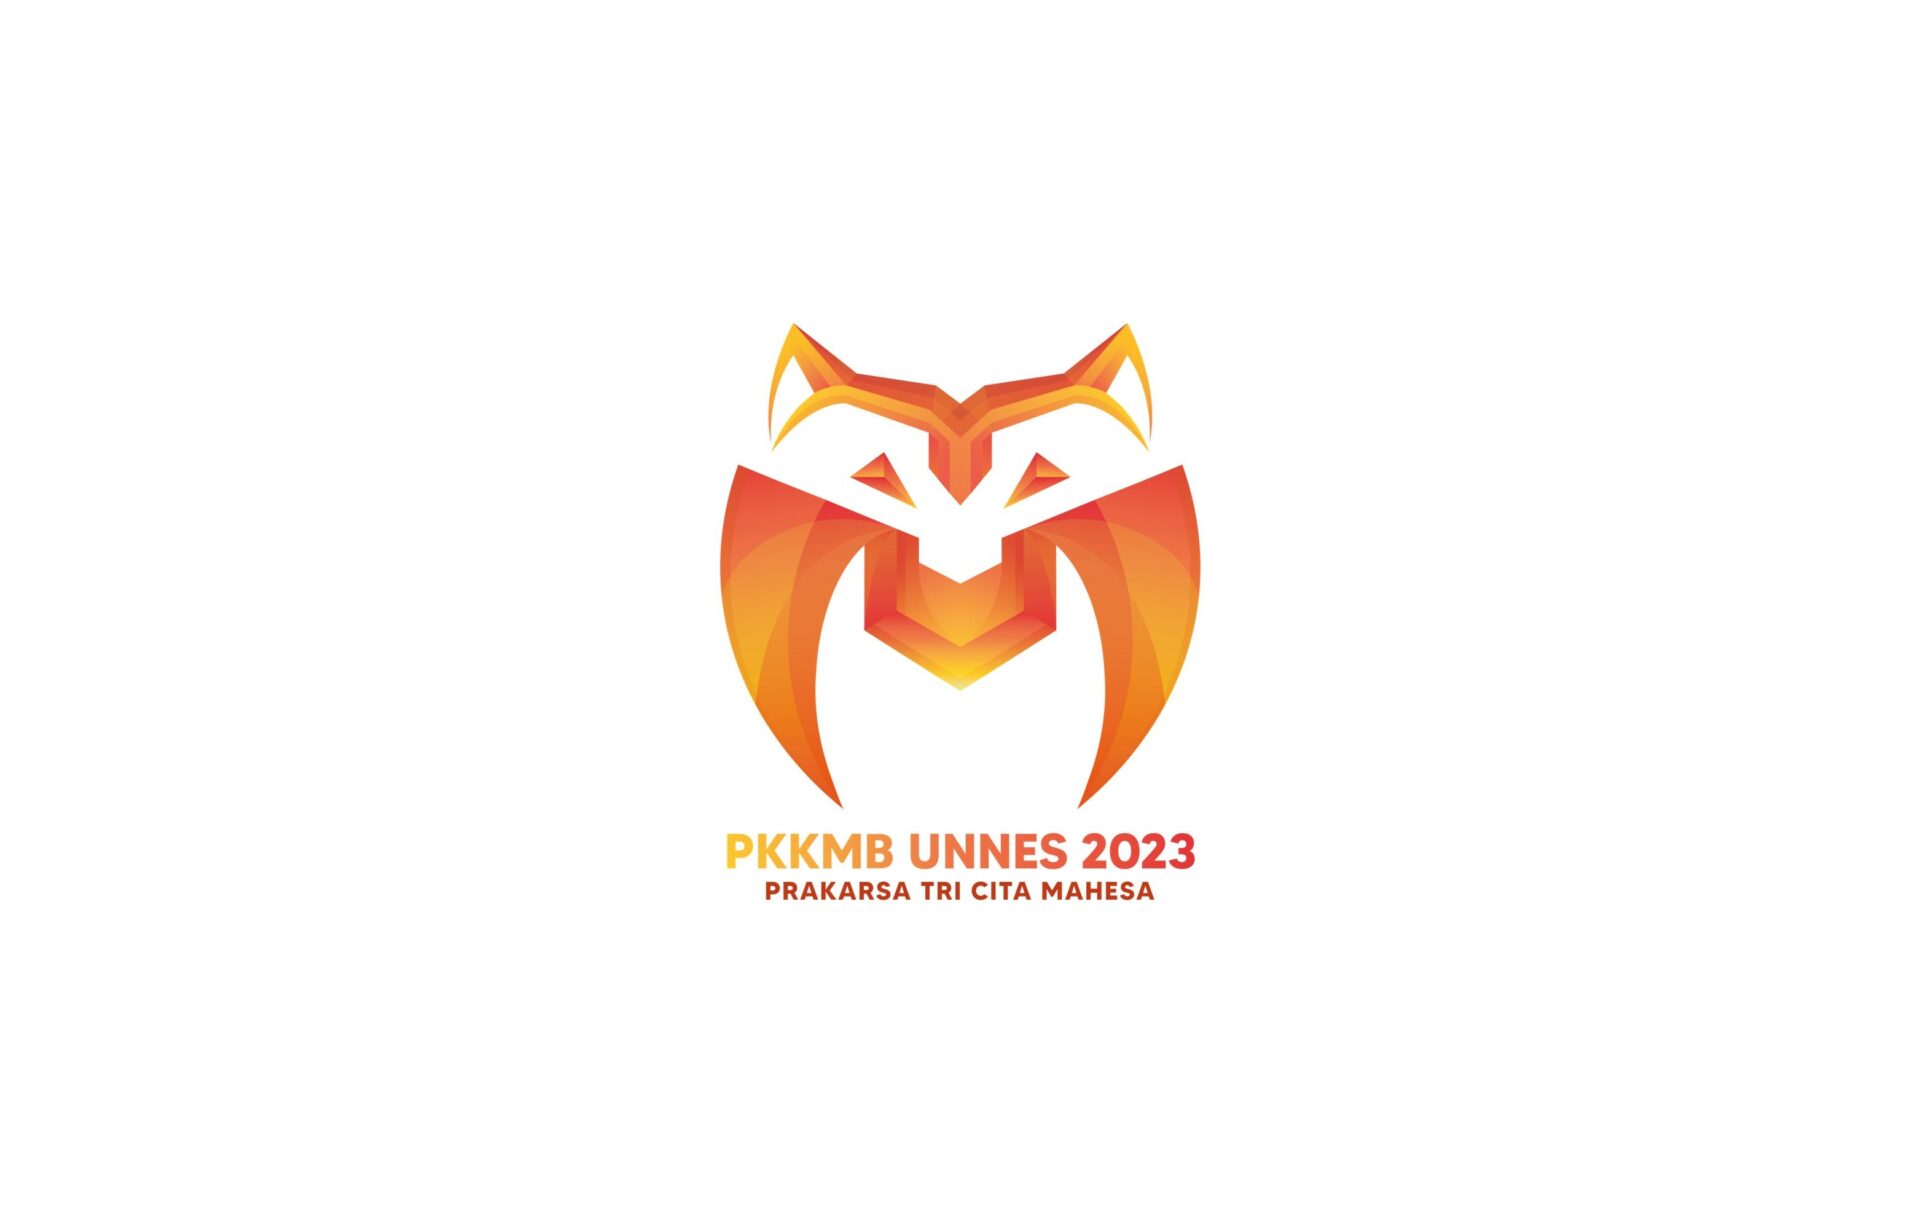 Logo PKKMB Unnes 2023 [Dok. Panitia PKKMB Unnes 2023]